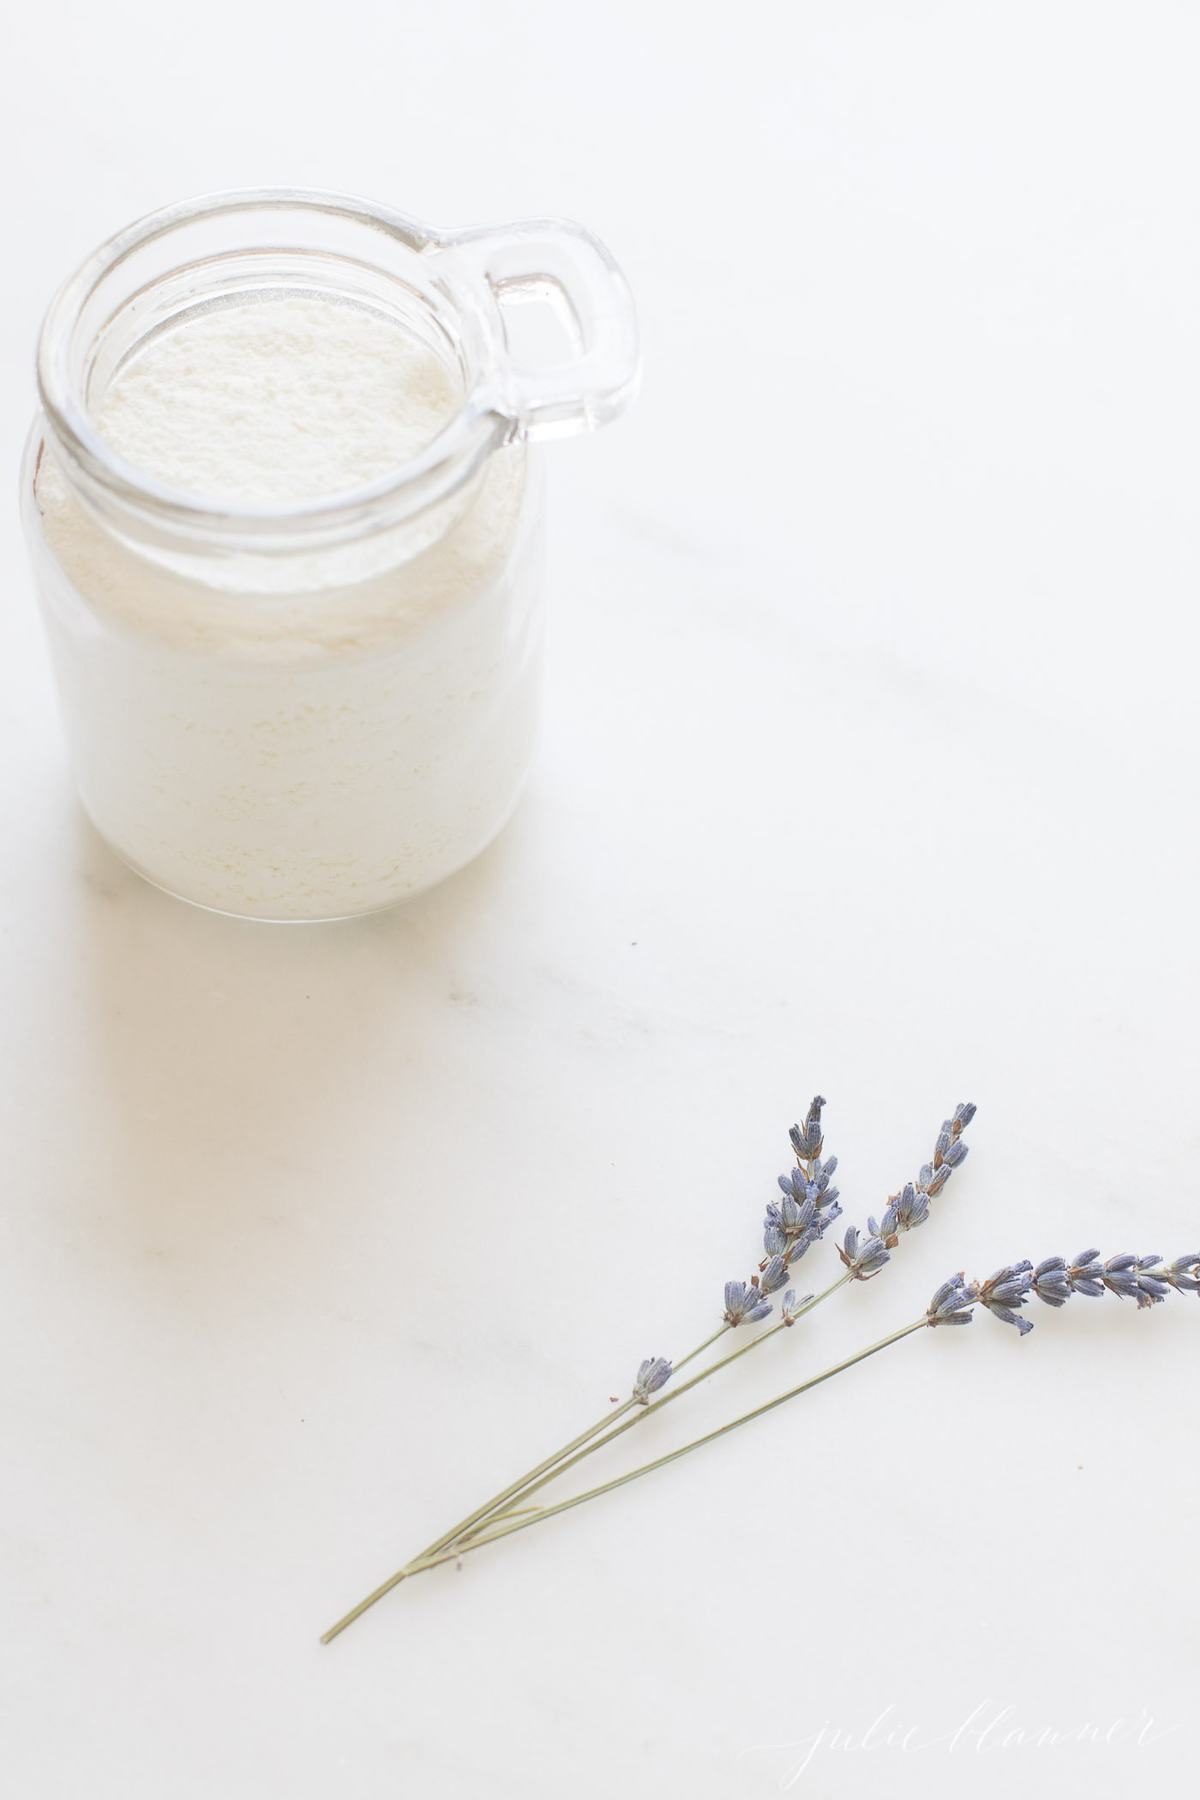 milk bath in glass jar by lavender